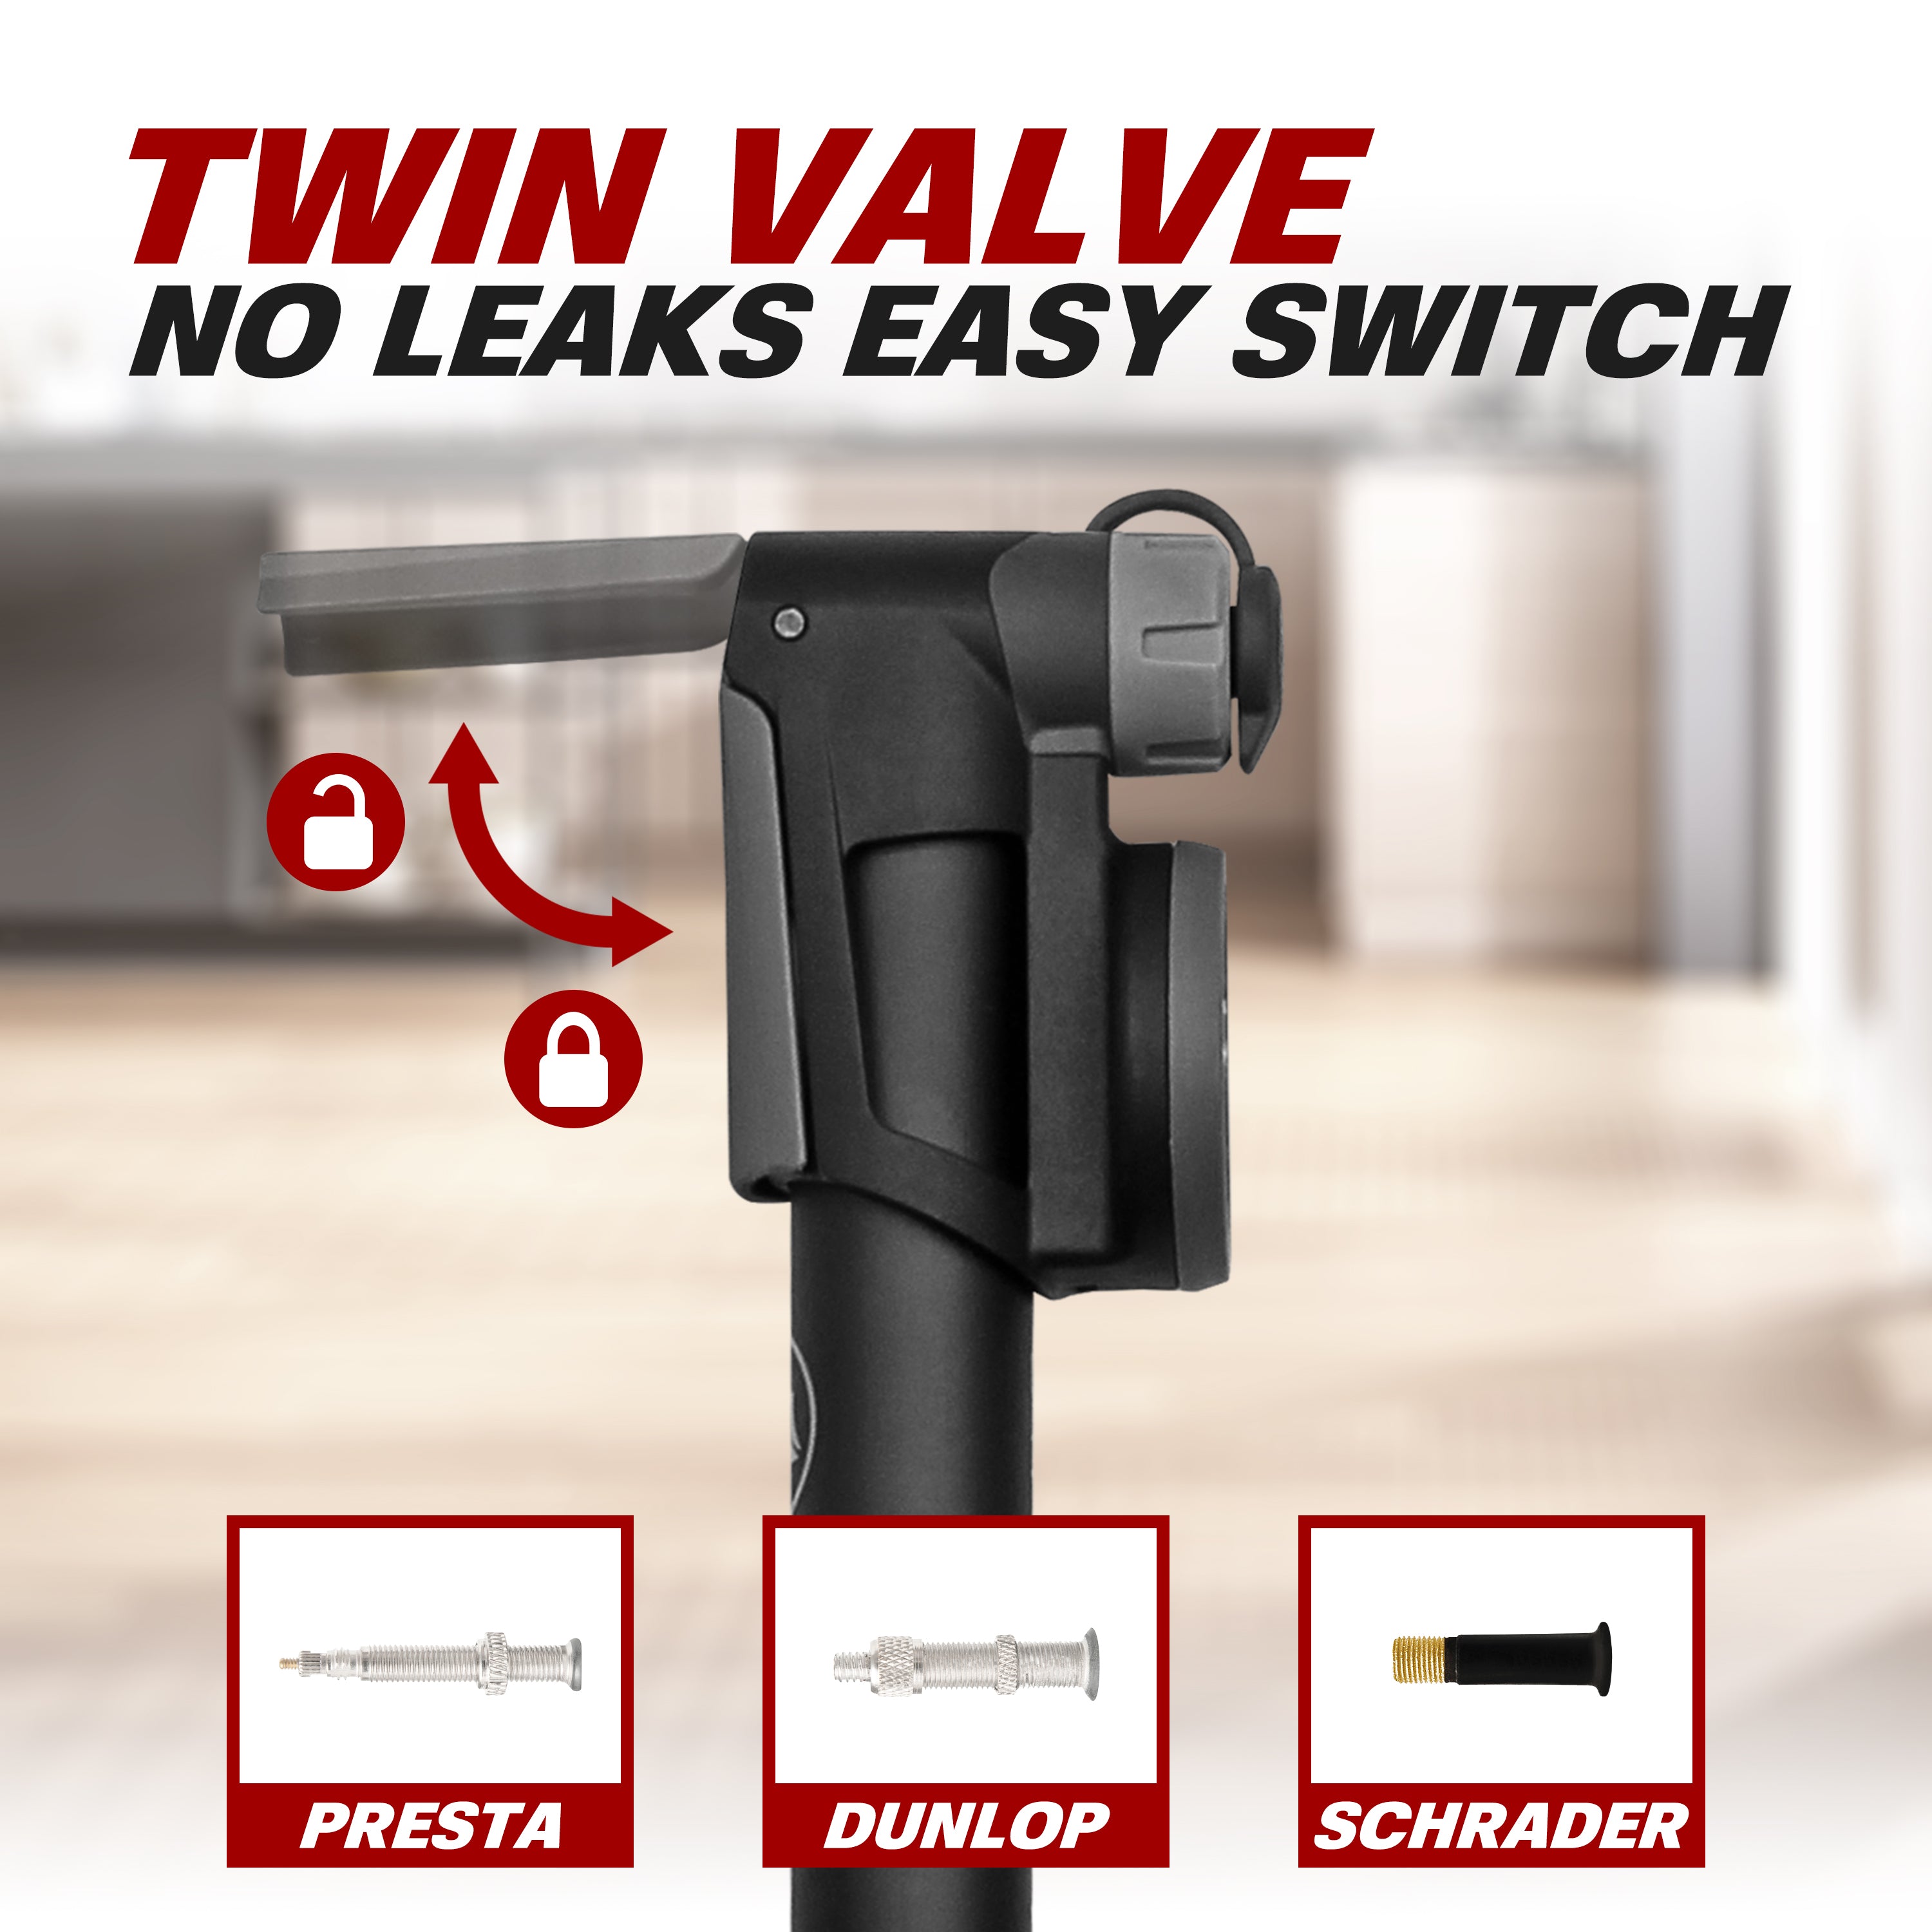 Twin Valve Design - Compatible with Presta, Dunlop, and Schrader